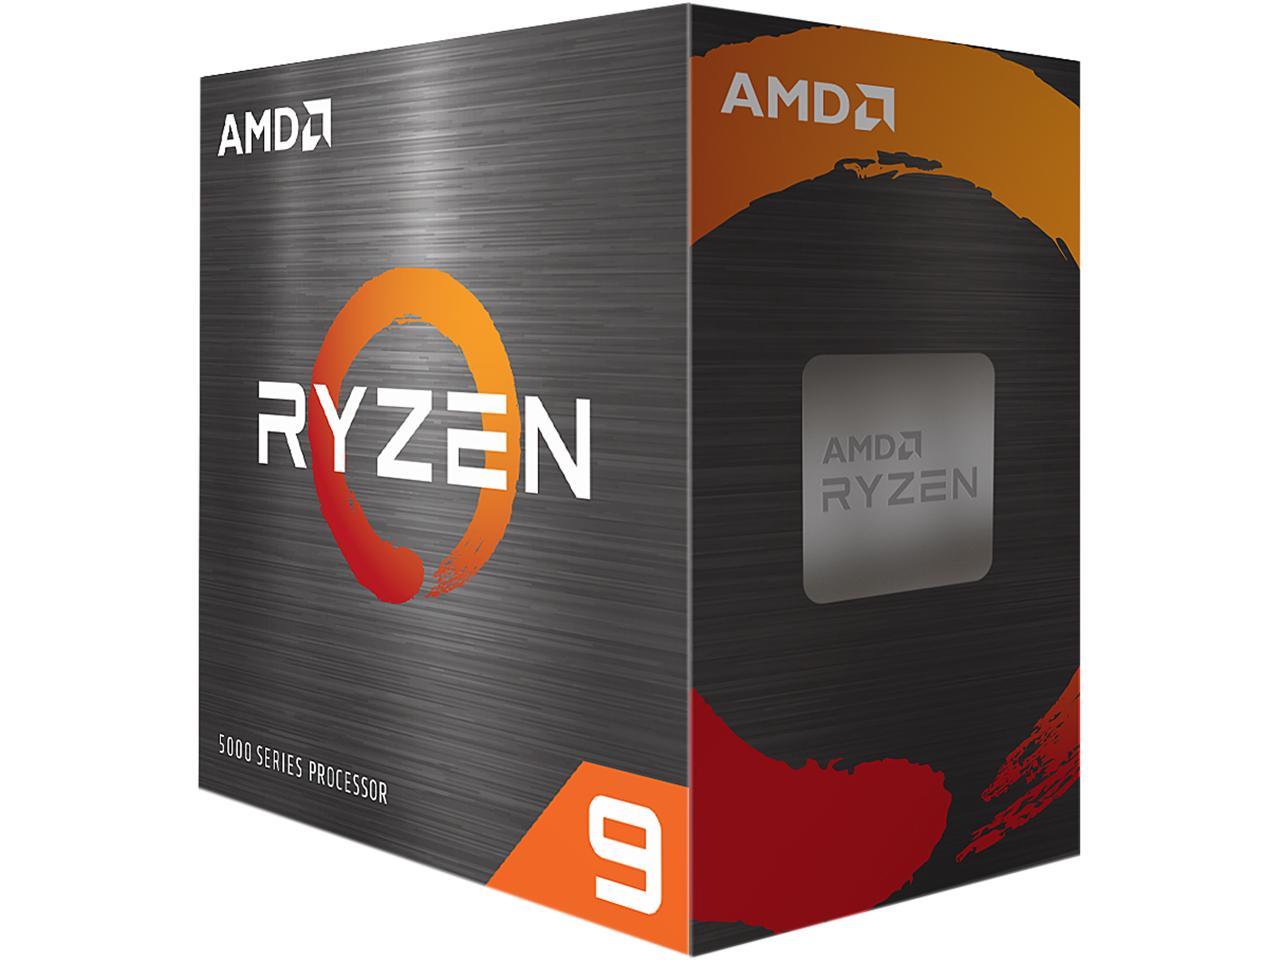 AMD Ryzen 9 5900X 12-Core 3.7 GHz Socket AM4 105W 100-100000061WOF Desktop Processor